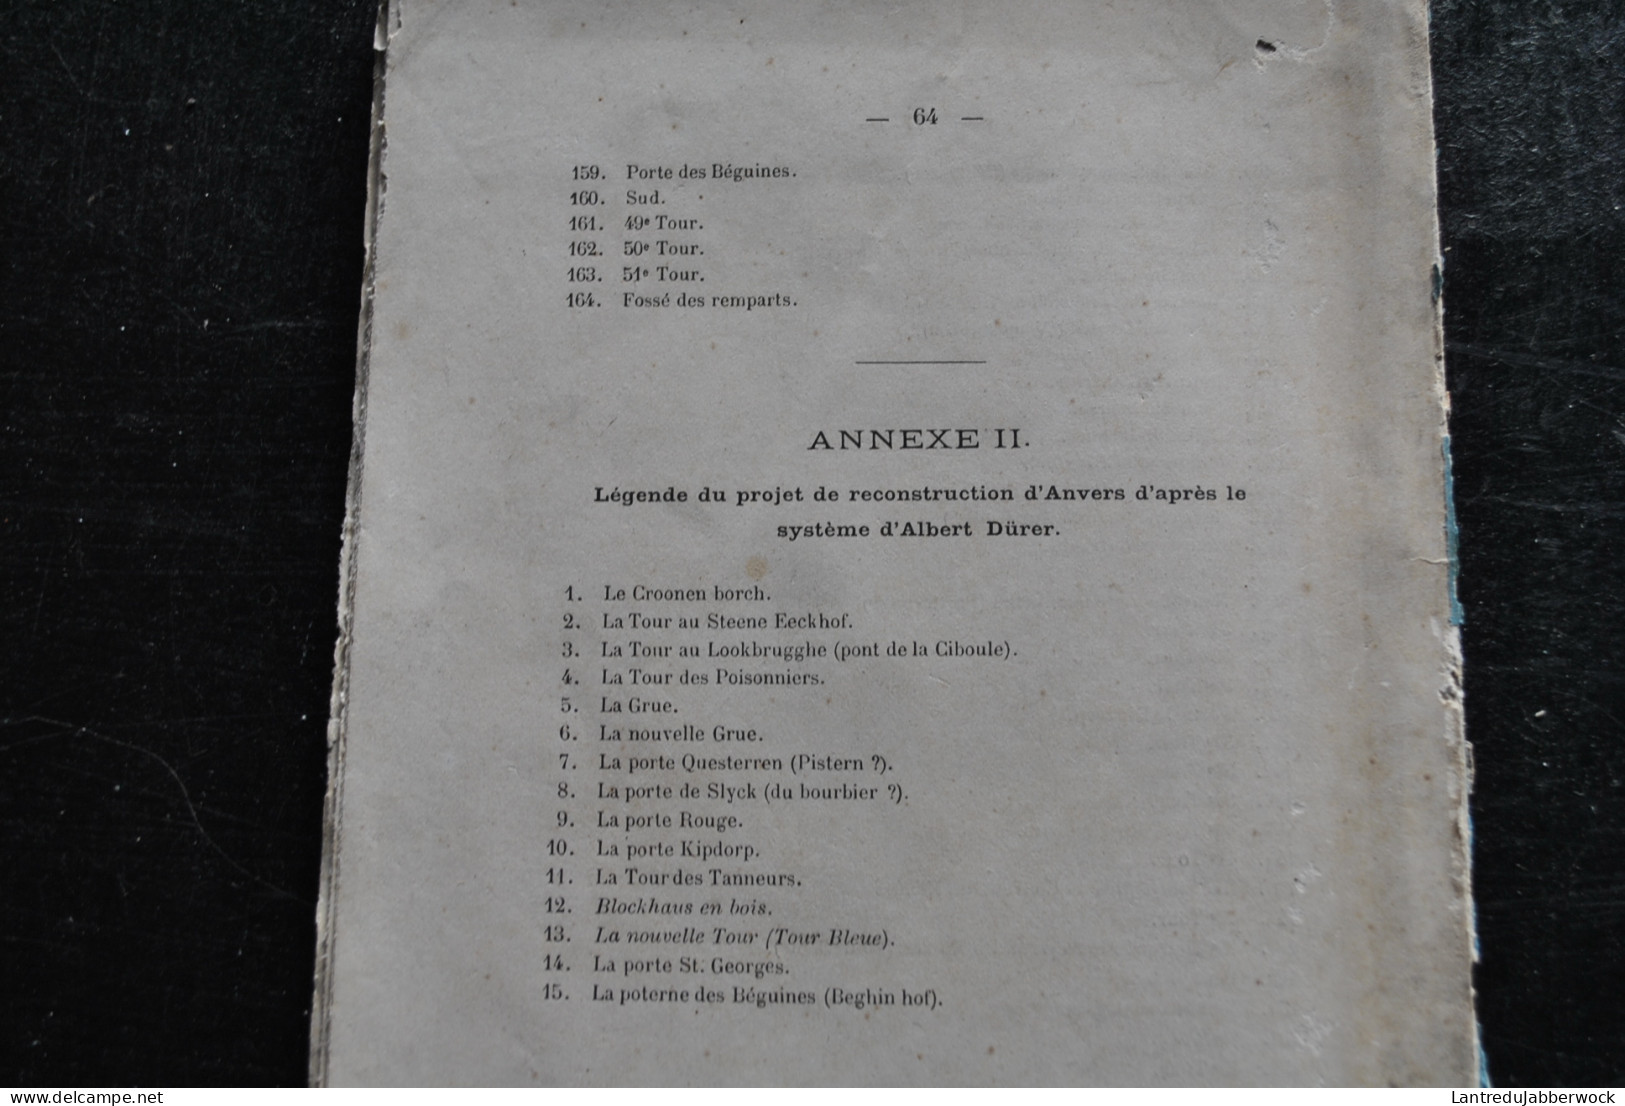 Académie d'archéologie de Belgique Bulletin 2è partie 1 1879 La tour bleue d'Anvers Colonel WAUWERMANS + Plans cartes 